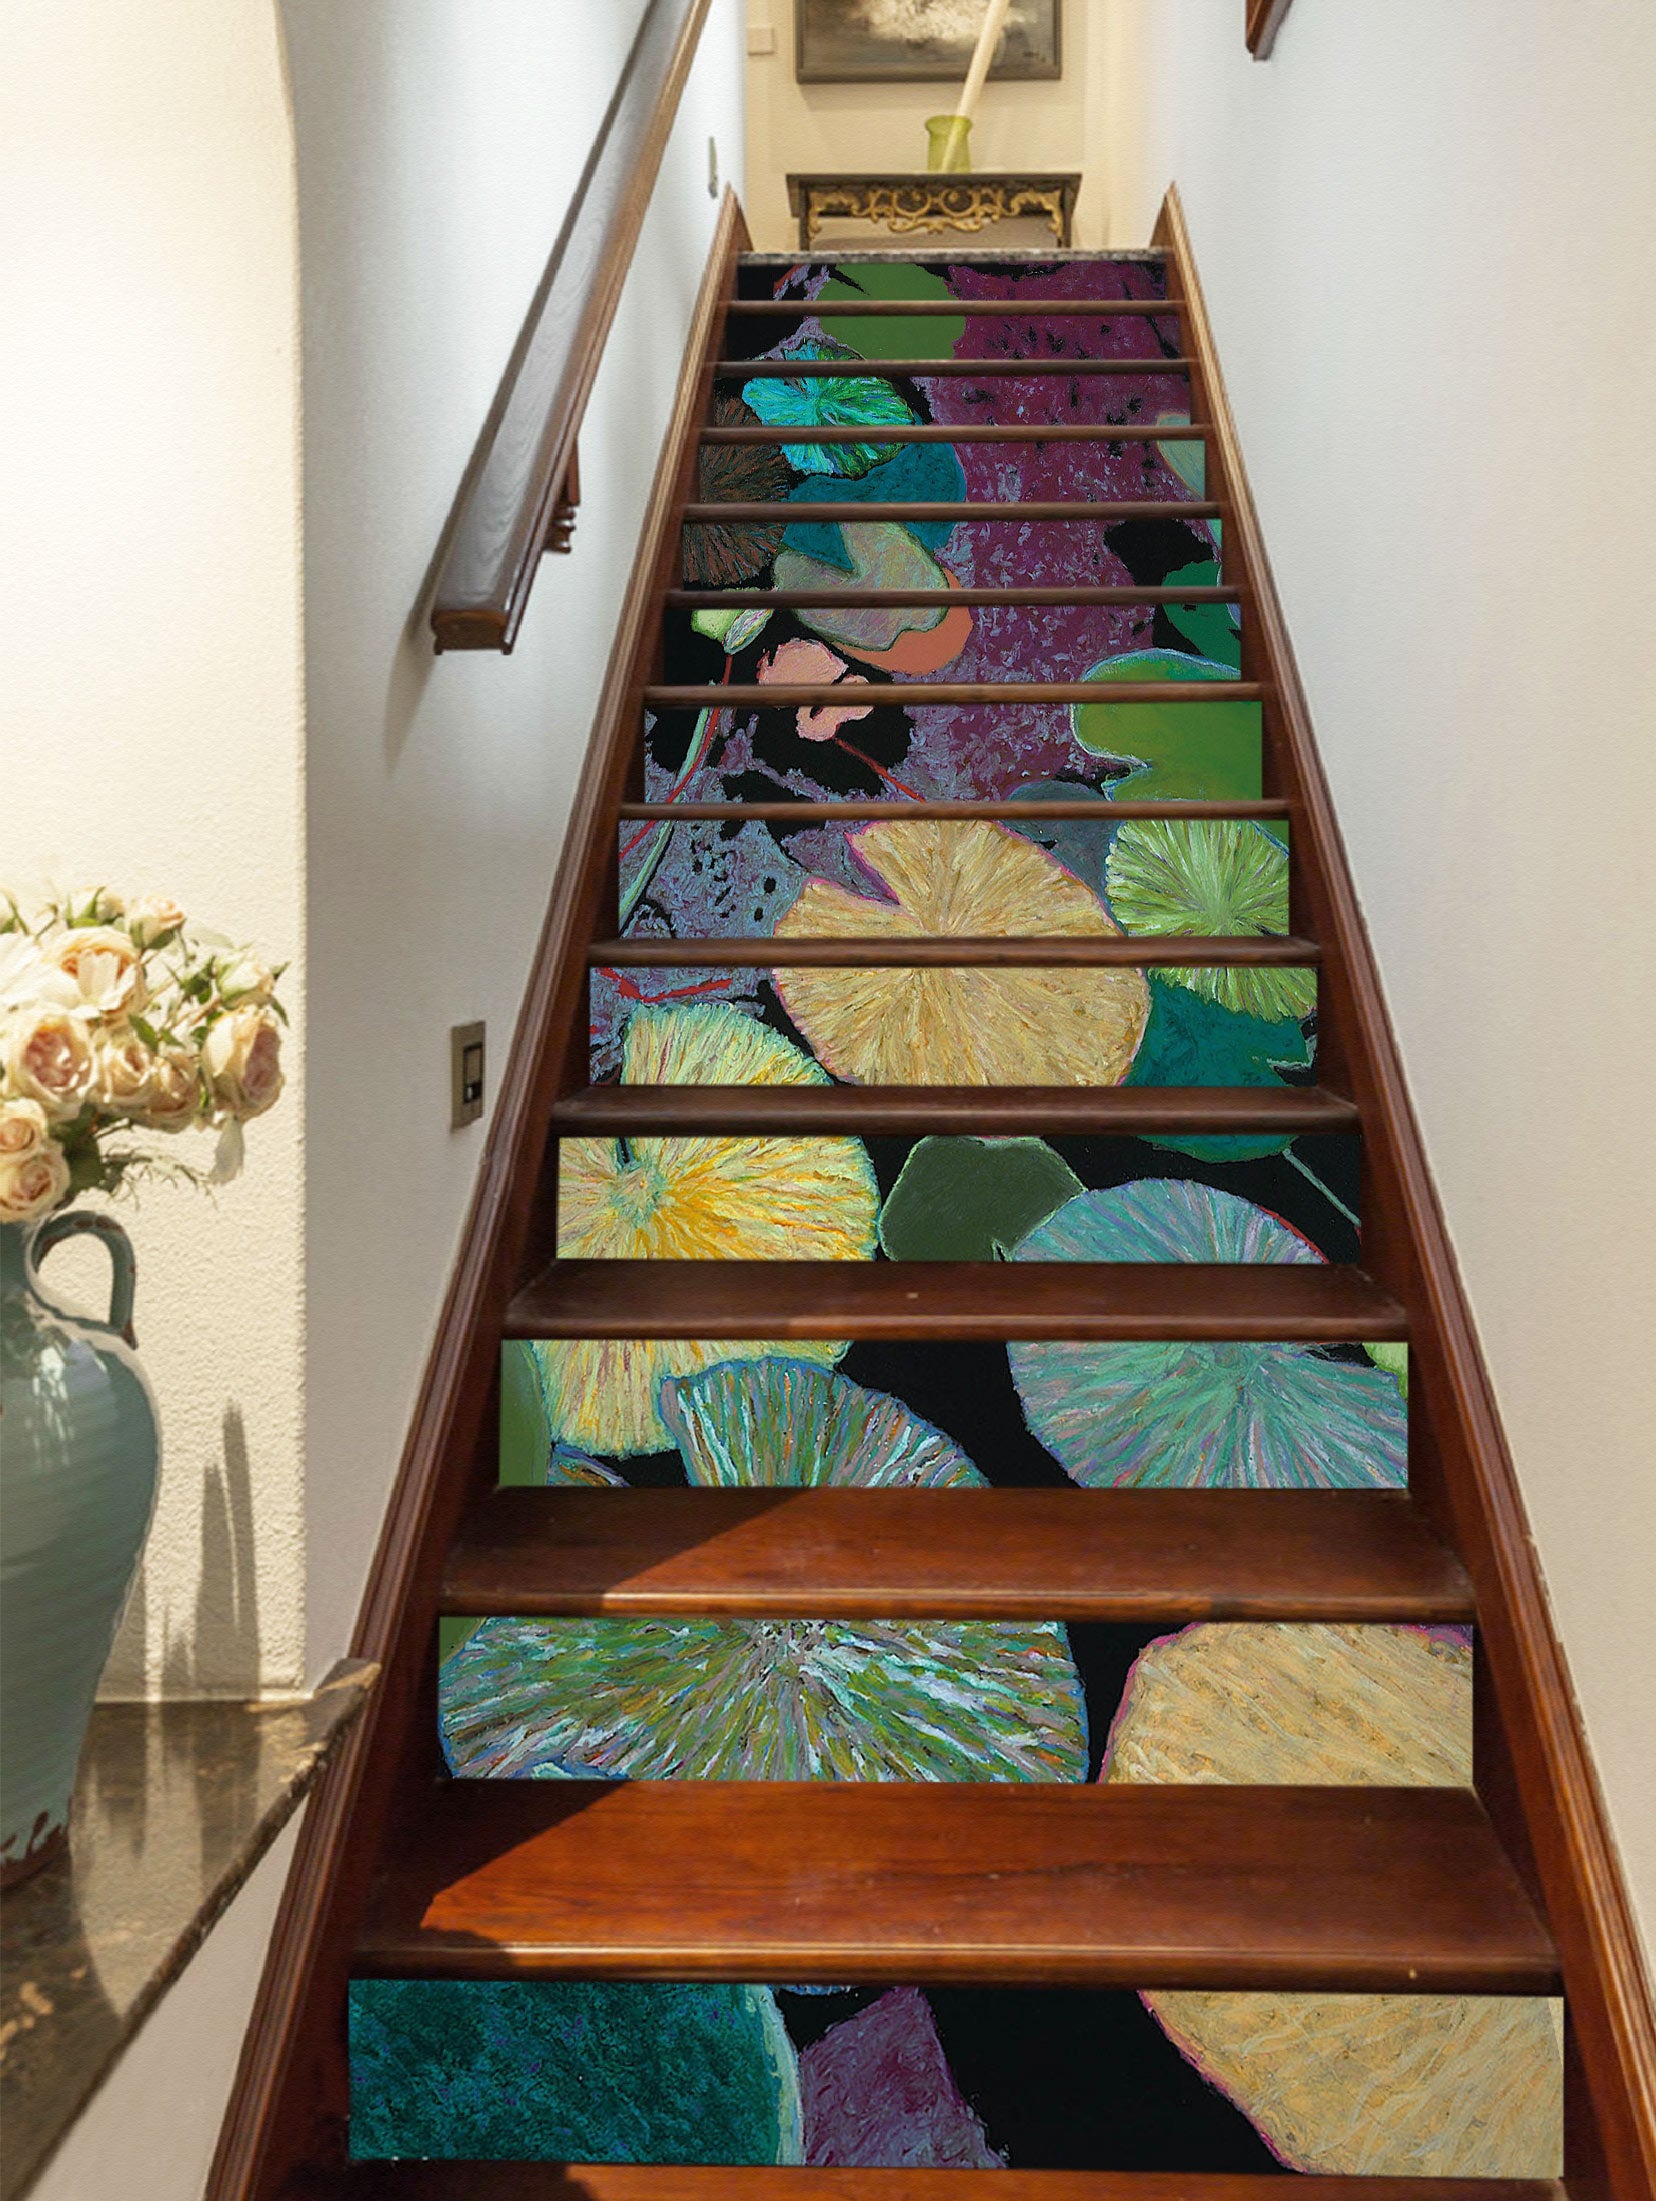 3D Green Lotus Leaf Painting 90143 Allan P. Friedlander Stair Risers